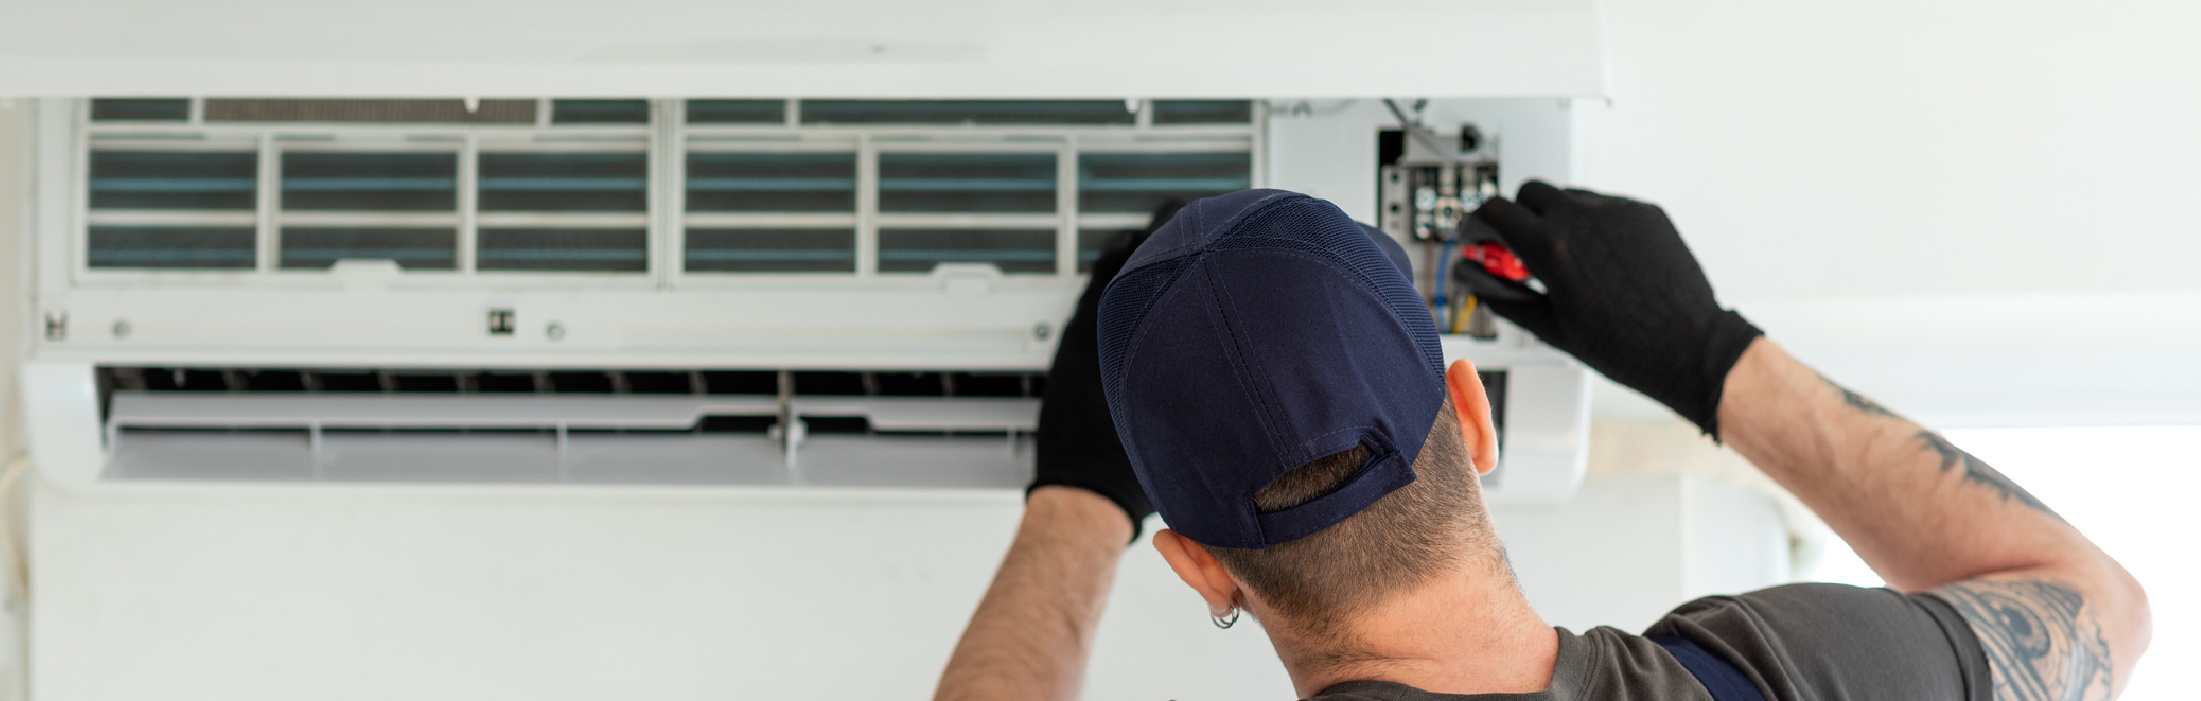 Technician repairing air conditioner